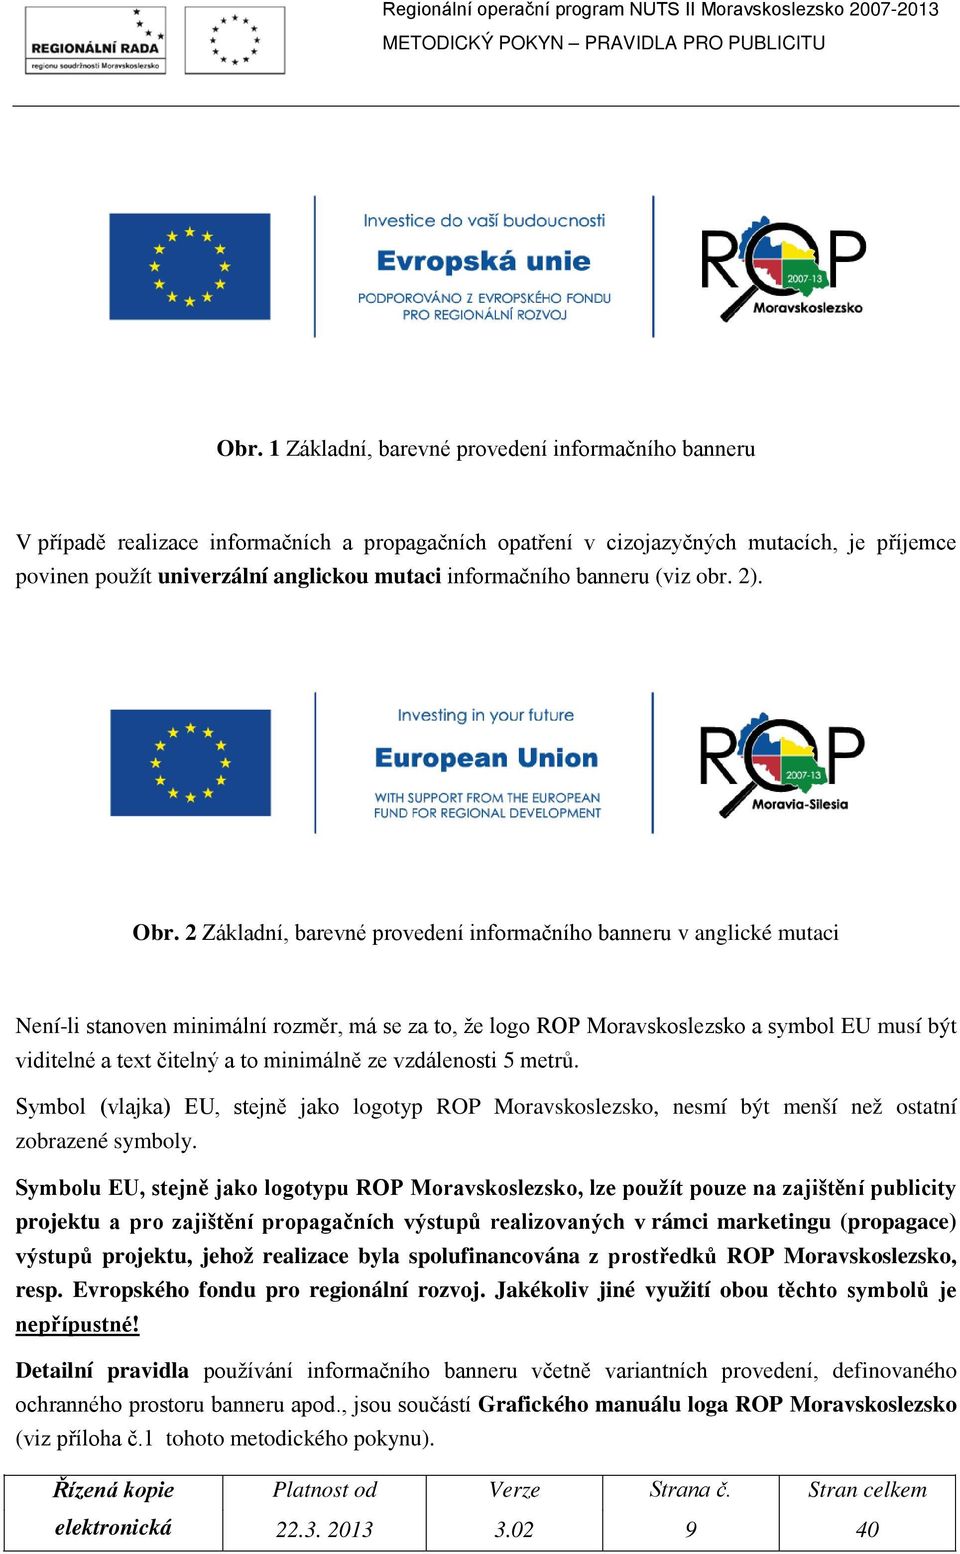 2 Základní, barevné provedení informačního banneru v anglické mutaci Není-li stanoven minimální rozměr, má se za to, že logo ROP Moravskoslezsko a symbol EU musí být viditelné a text čitelný a to